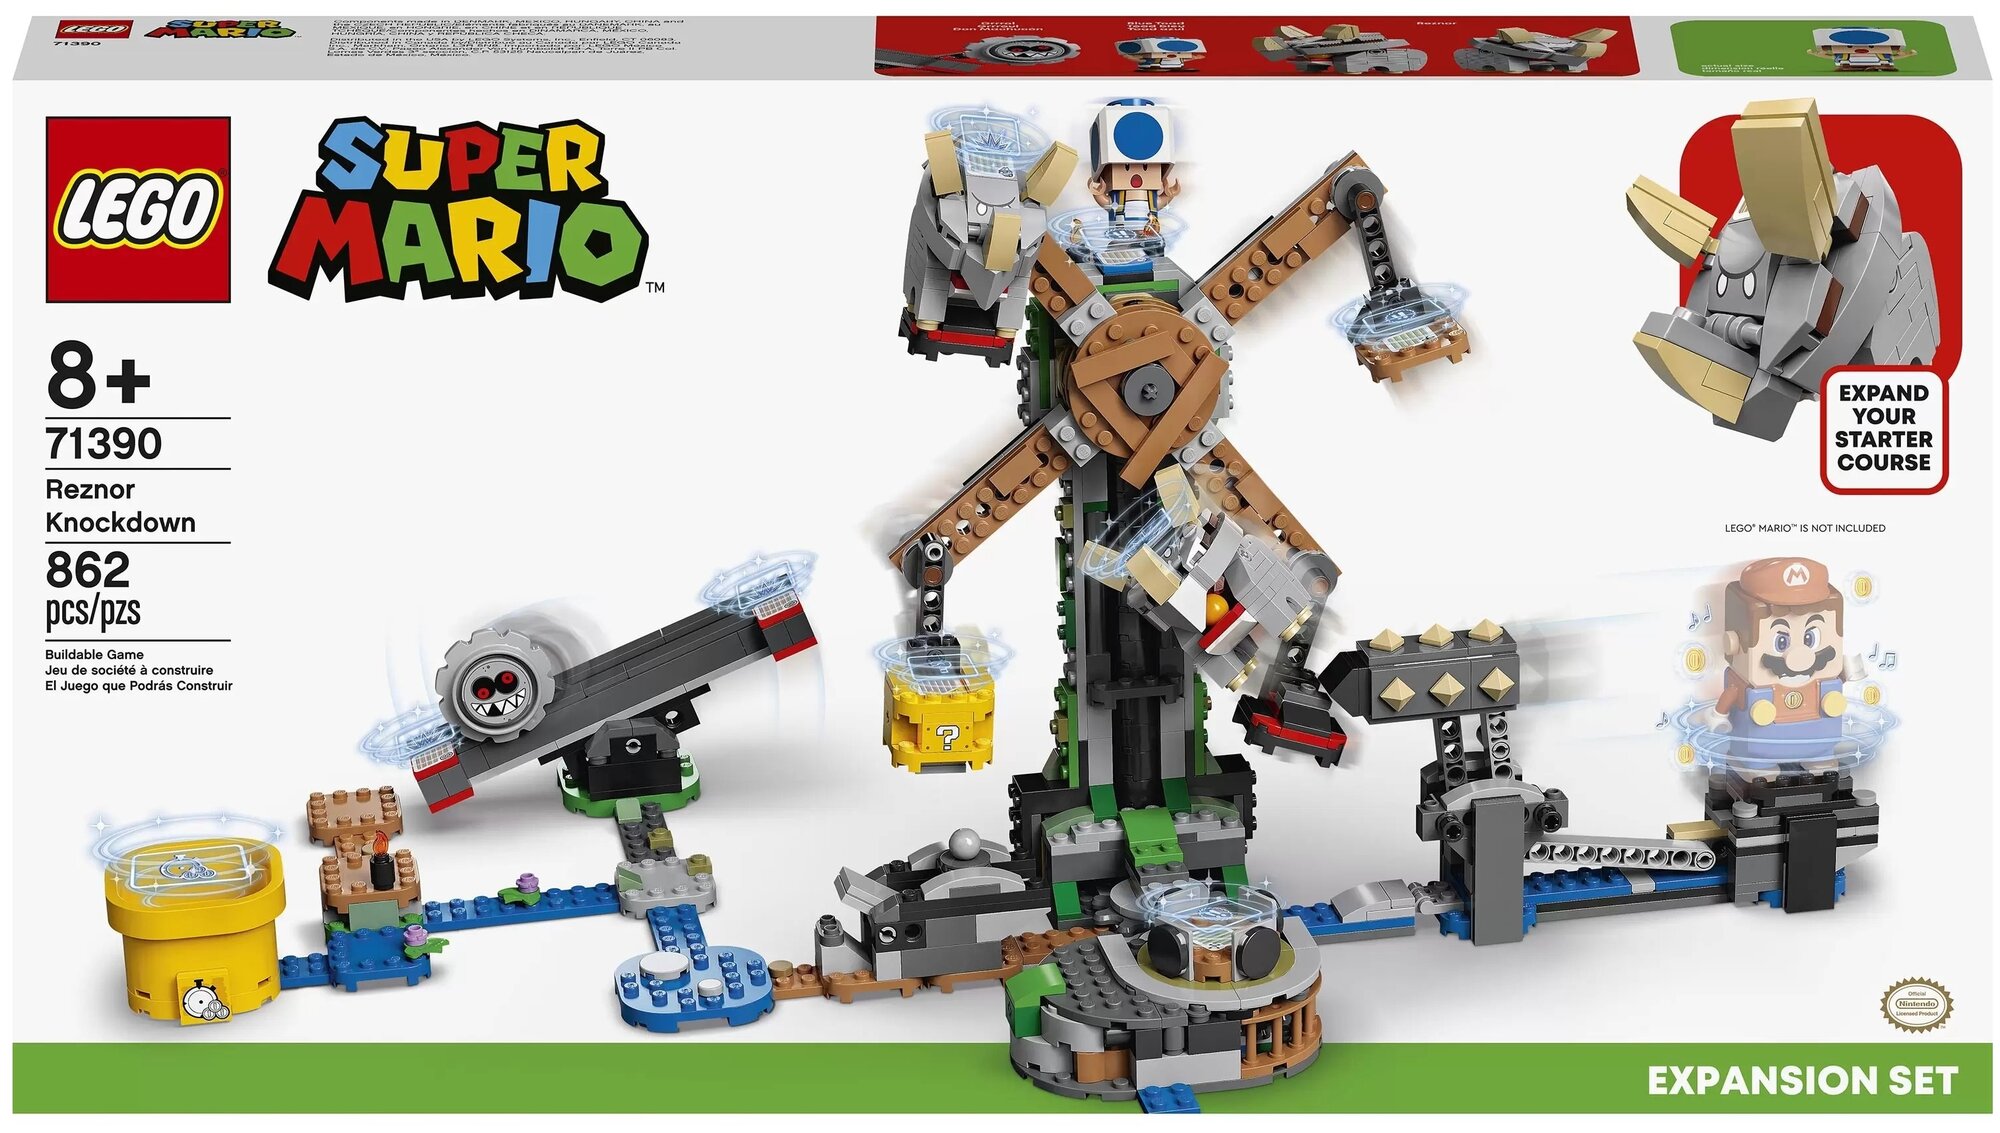 Конструктор LEGO Super Mario 71390 Дополнительный набор «Нокдаун резноров», 862 дет.